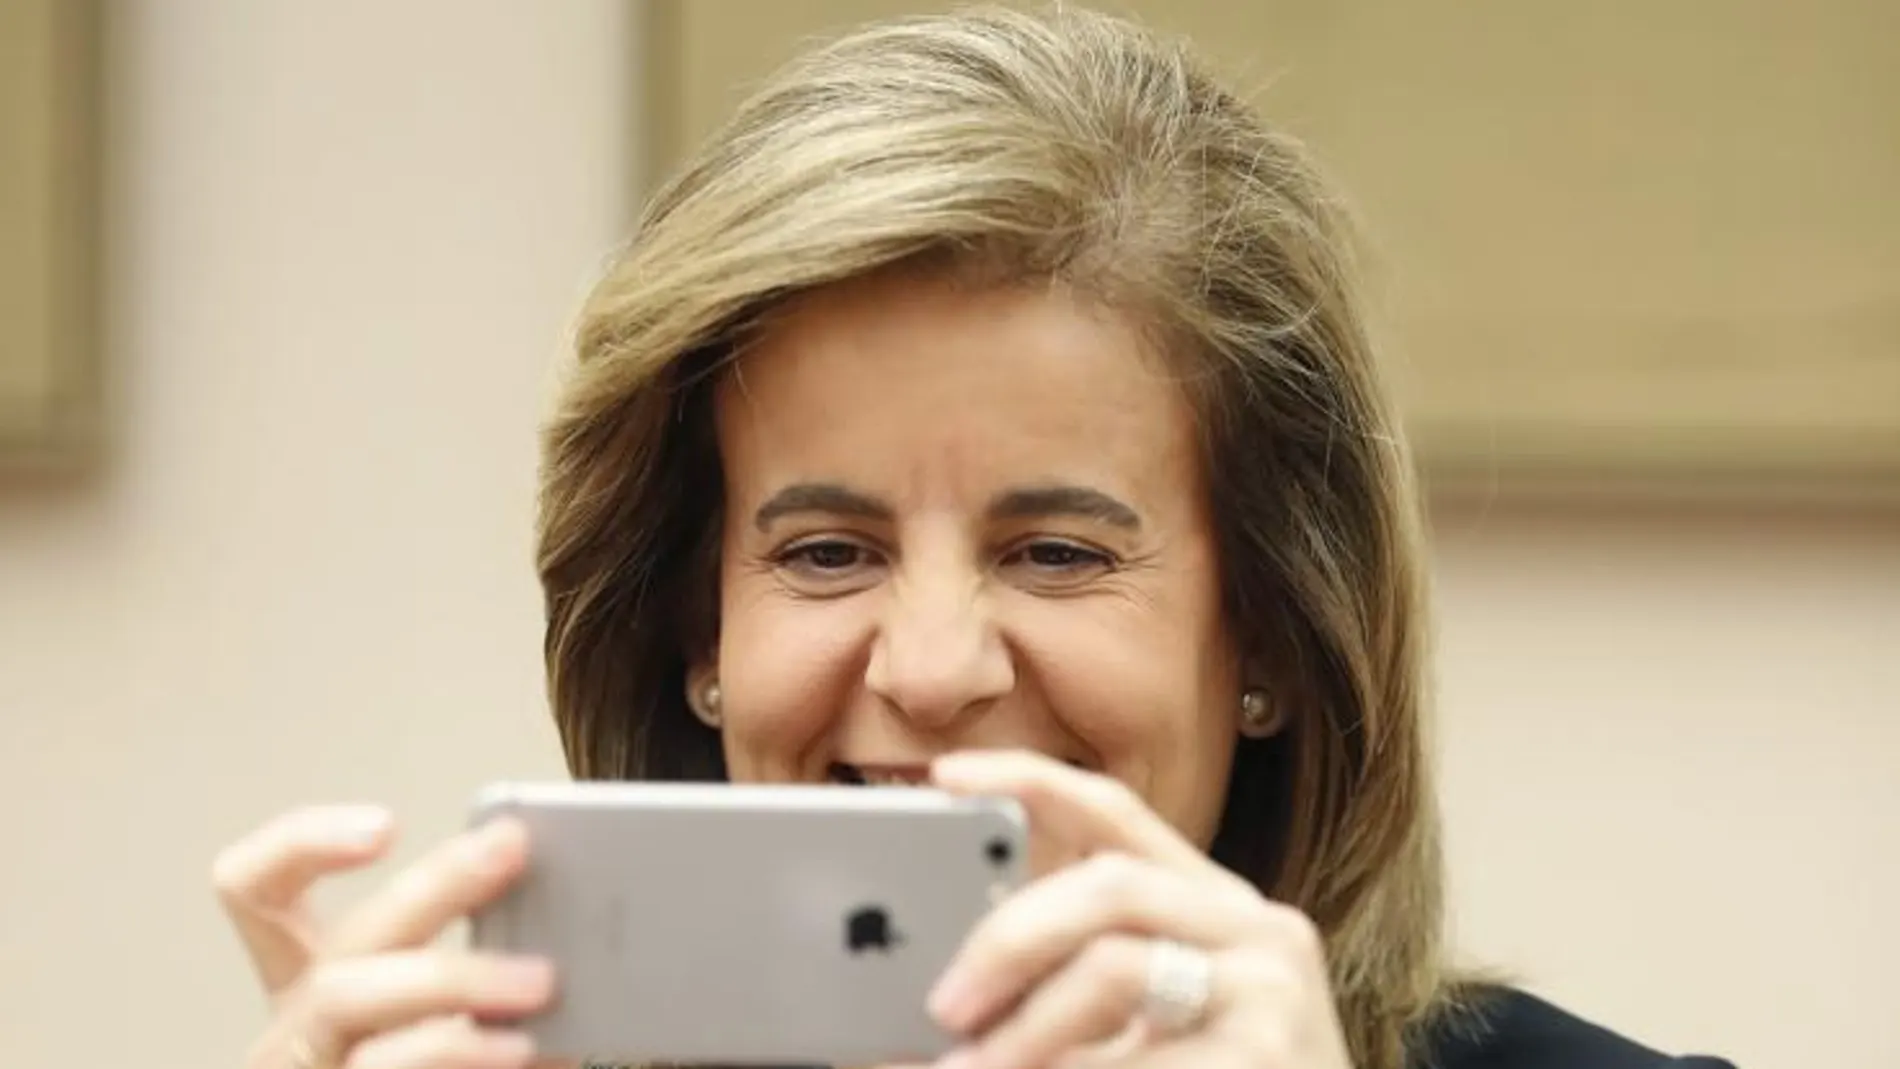 La ministra de Empleo, Fátima Báñez, hace una foto con su teléfono móvil a los fotógrafos, antes de su comparecencia en la Comisión de Empleo y Seguridad Social